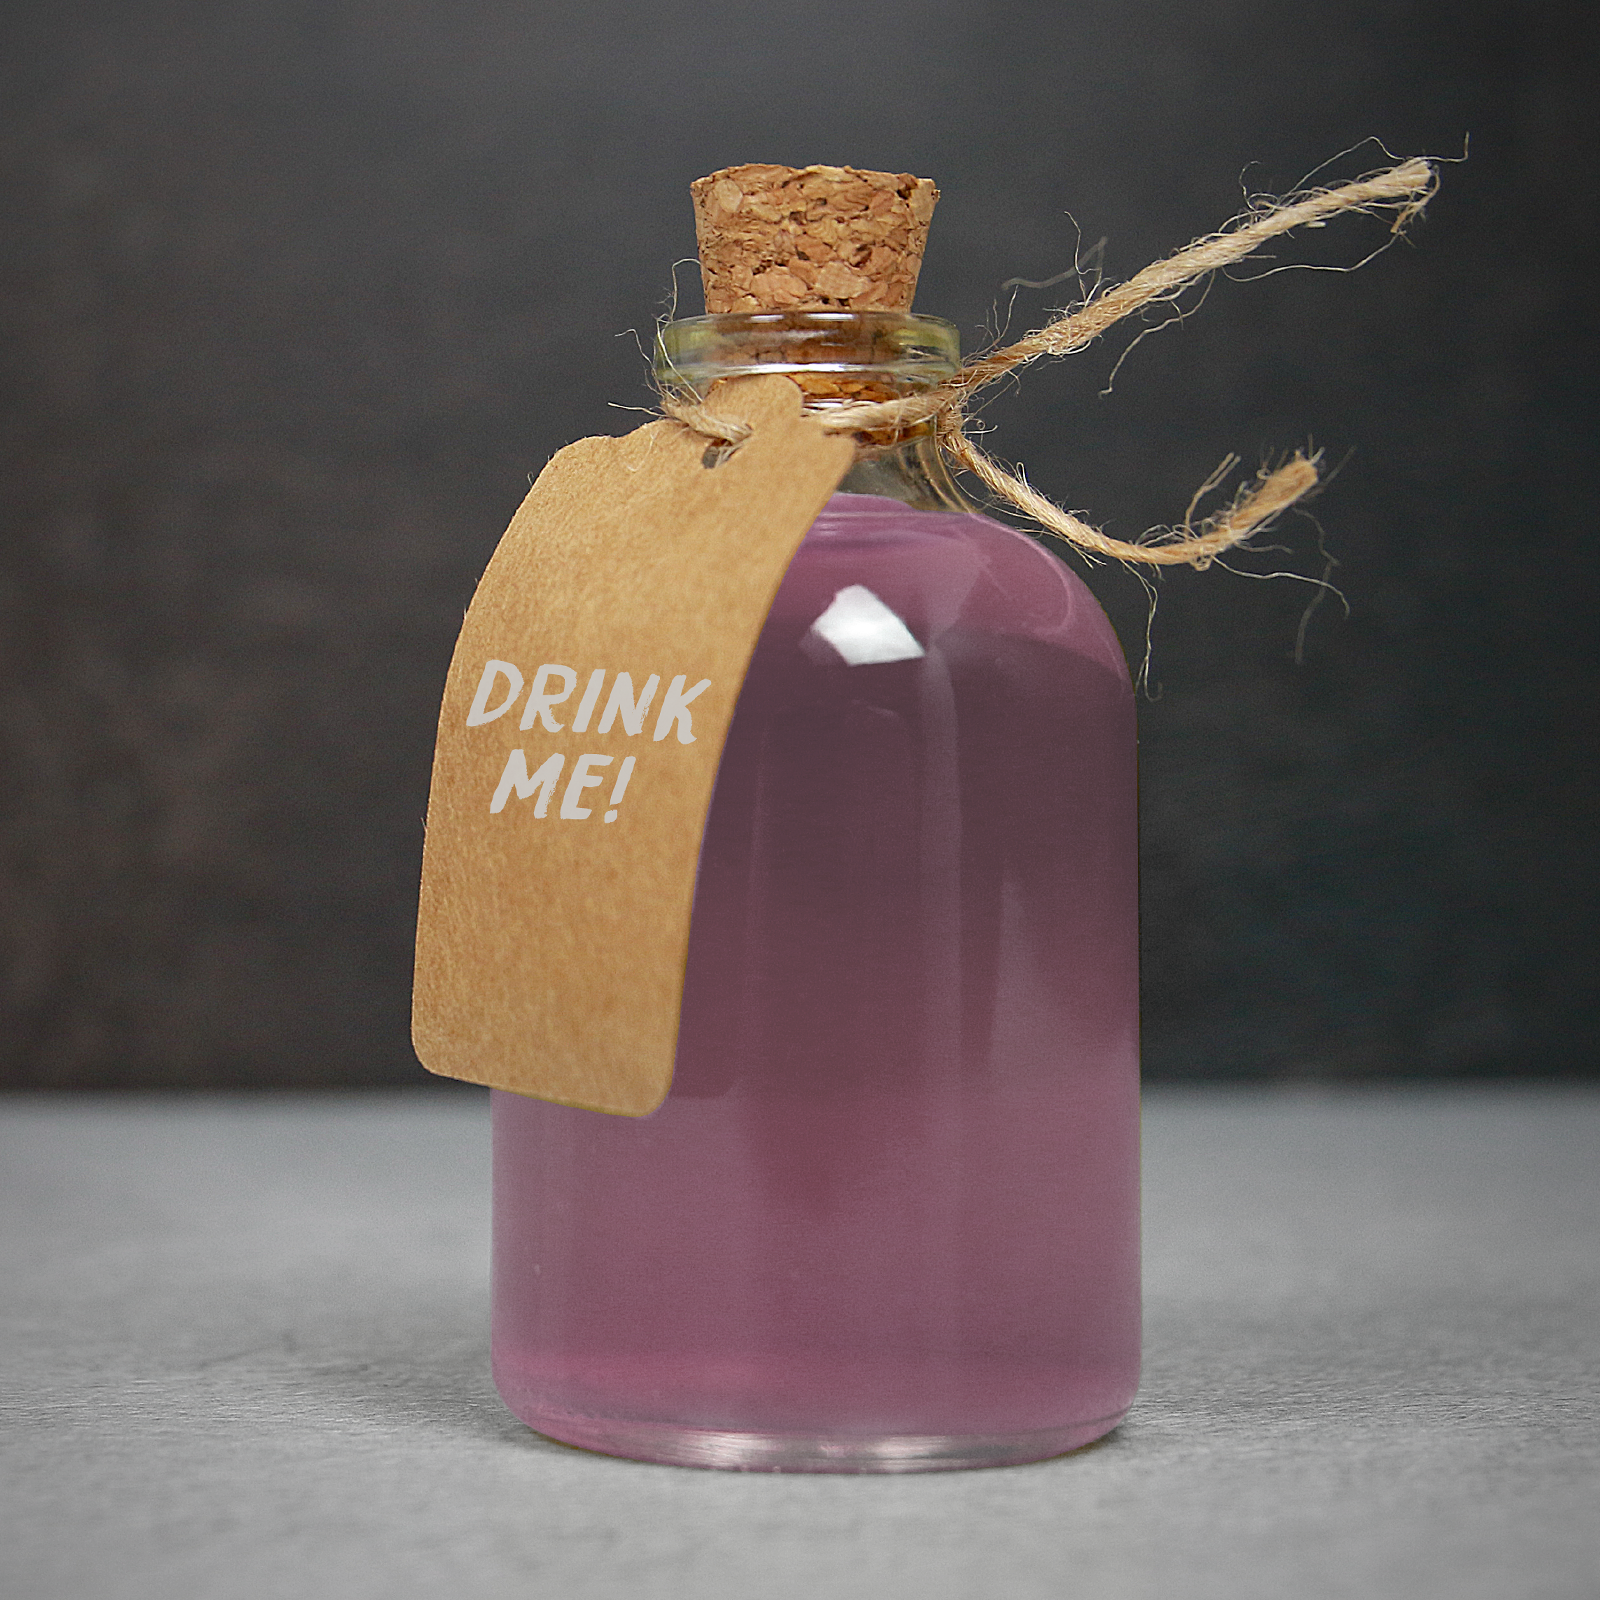 Set of 12 mini glass bottles cork stopper wood fragrance diffuser for wedding gift